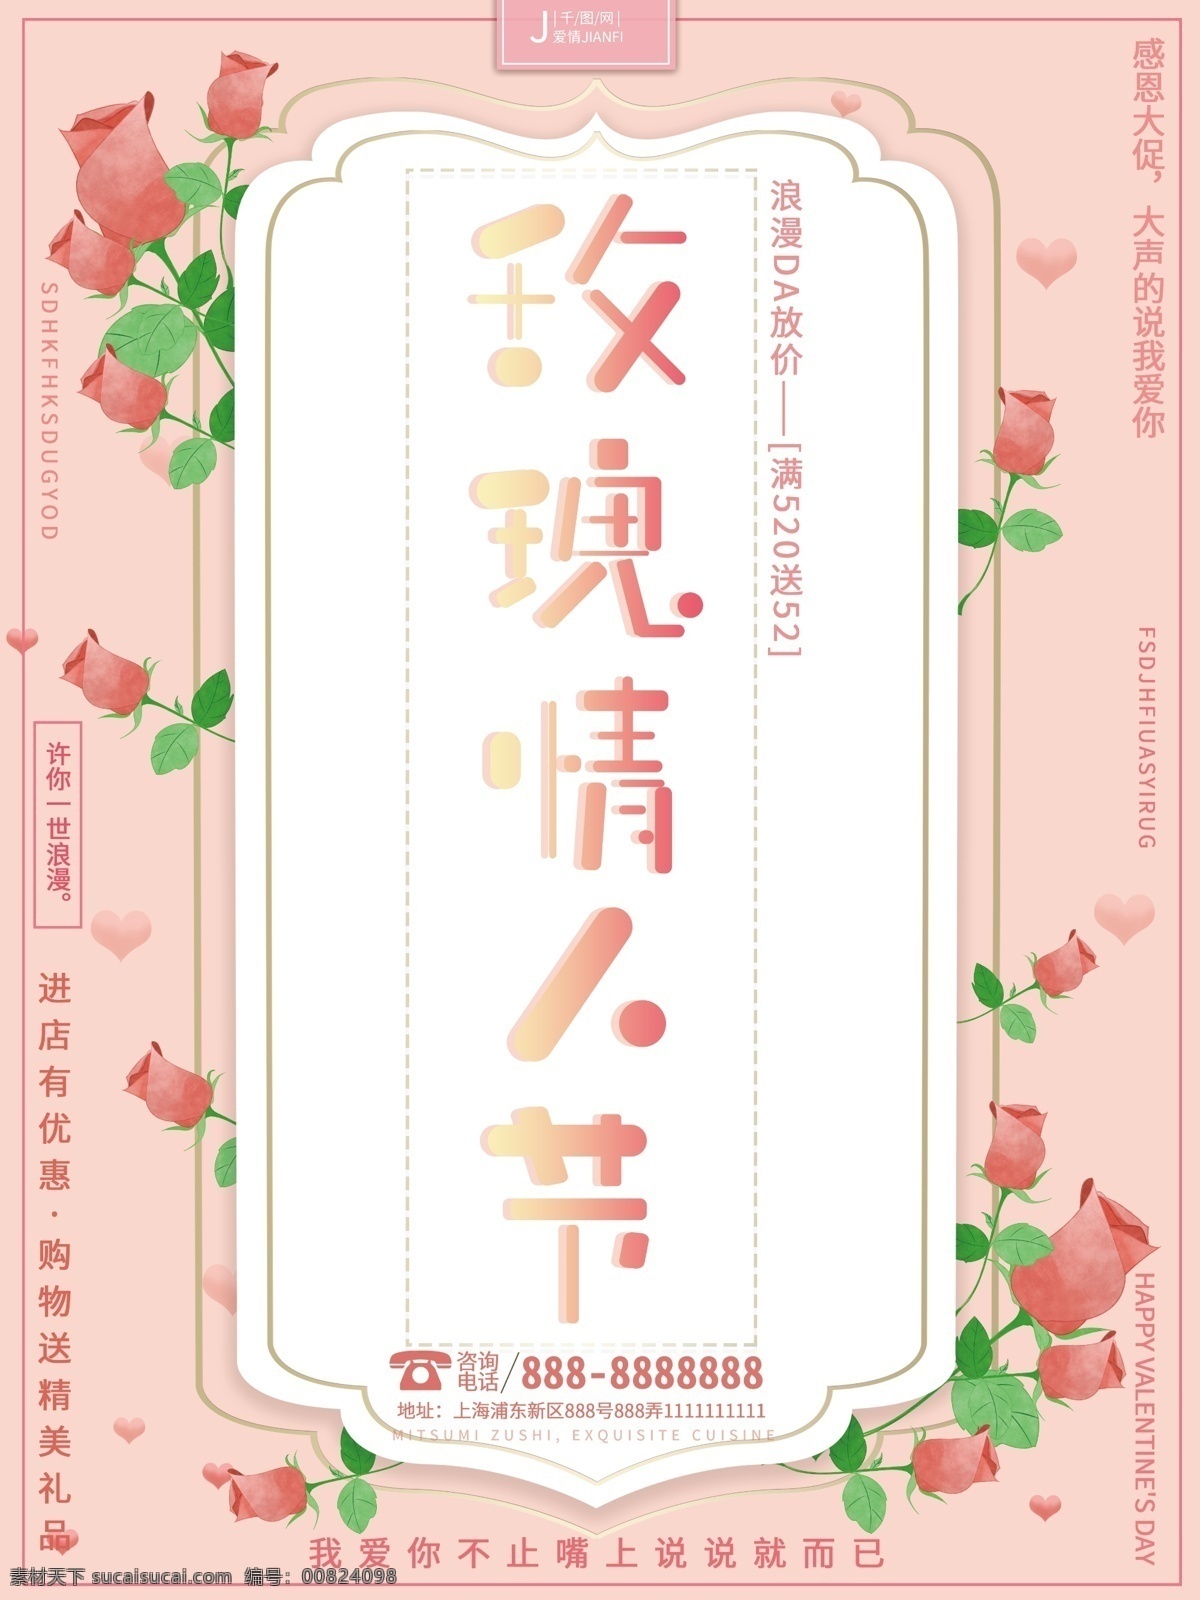 唯美 浪漫 温馨 粉色 520 玫瑰 情人节 促销 海报 唯美浪漫 玫瑰情人节 促销海报